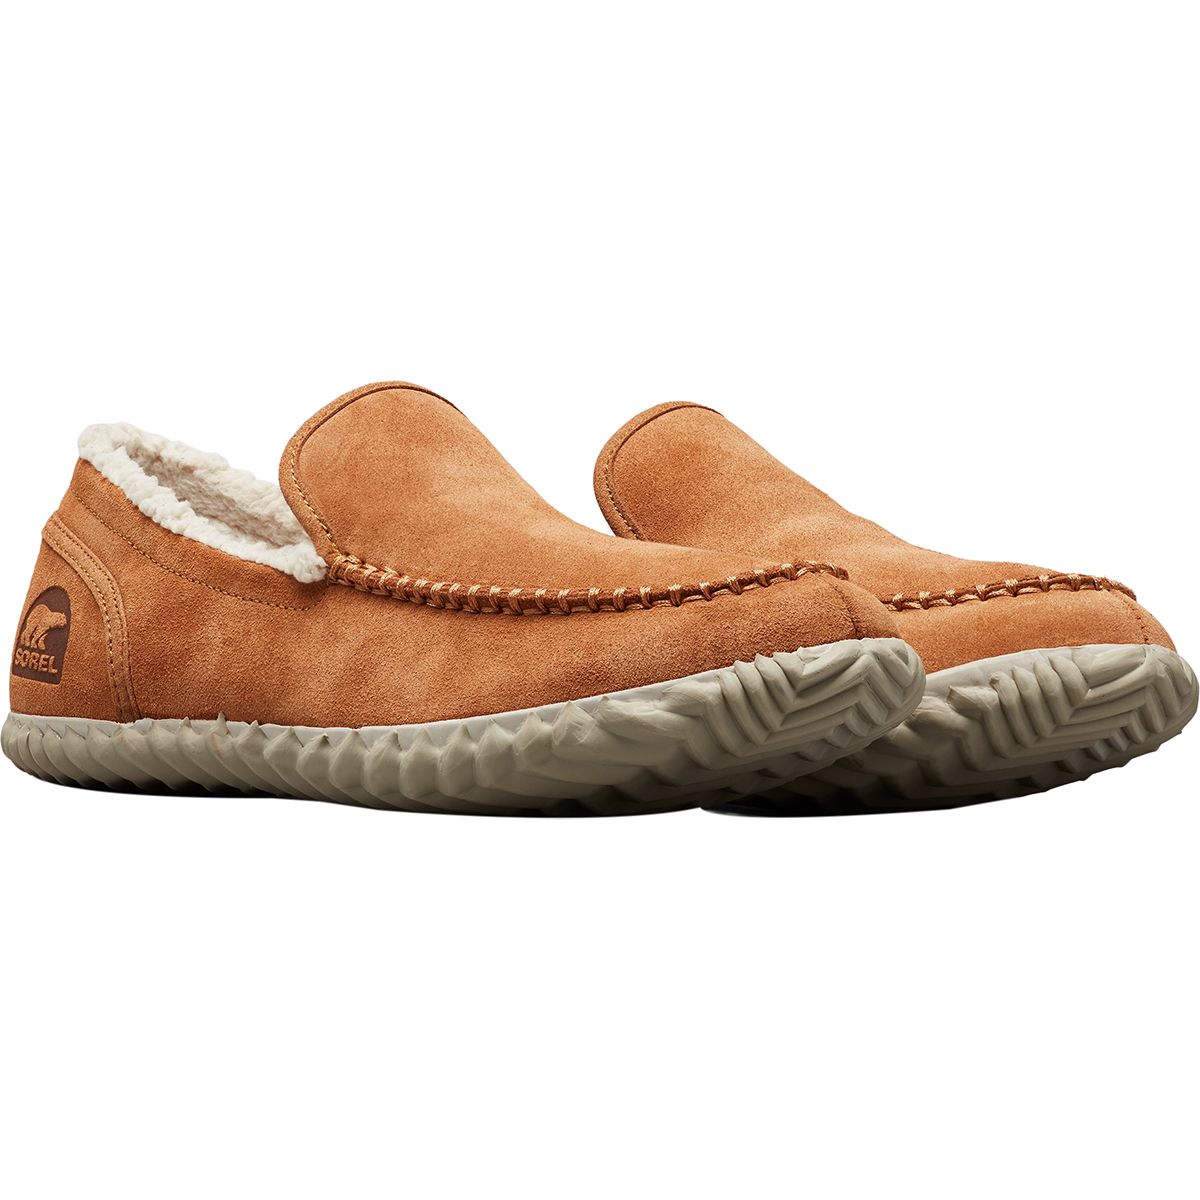 SOREL Moc Slipper - Men's - Footwear